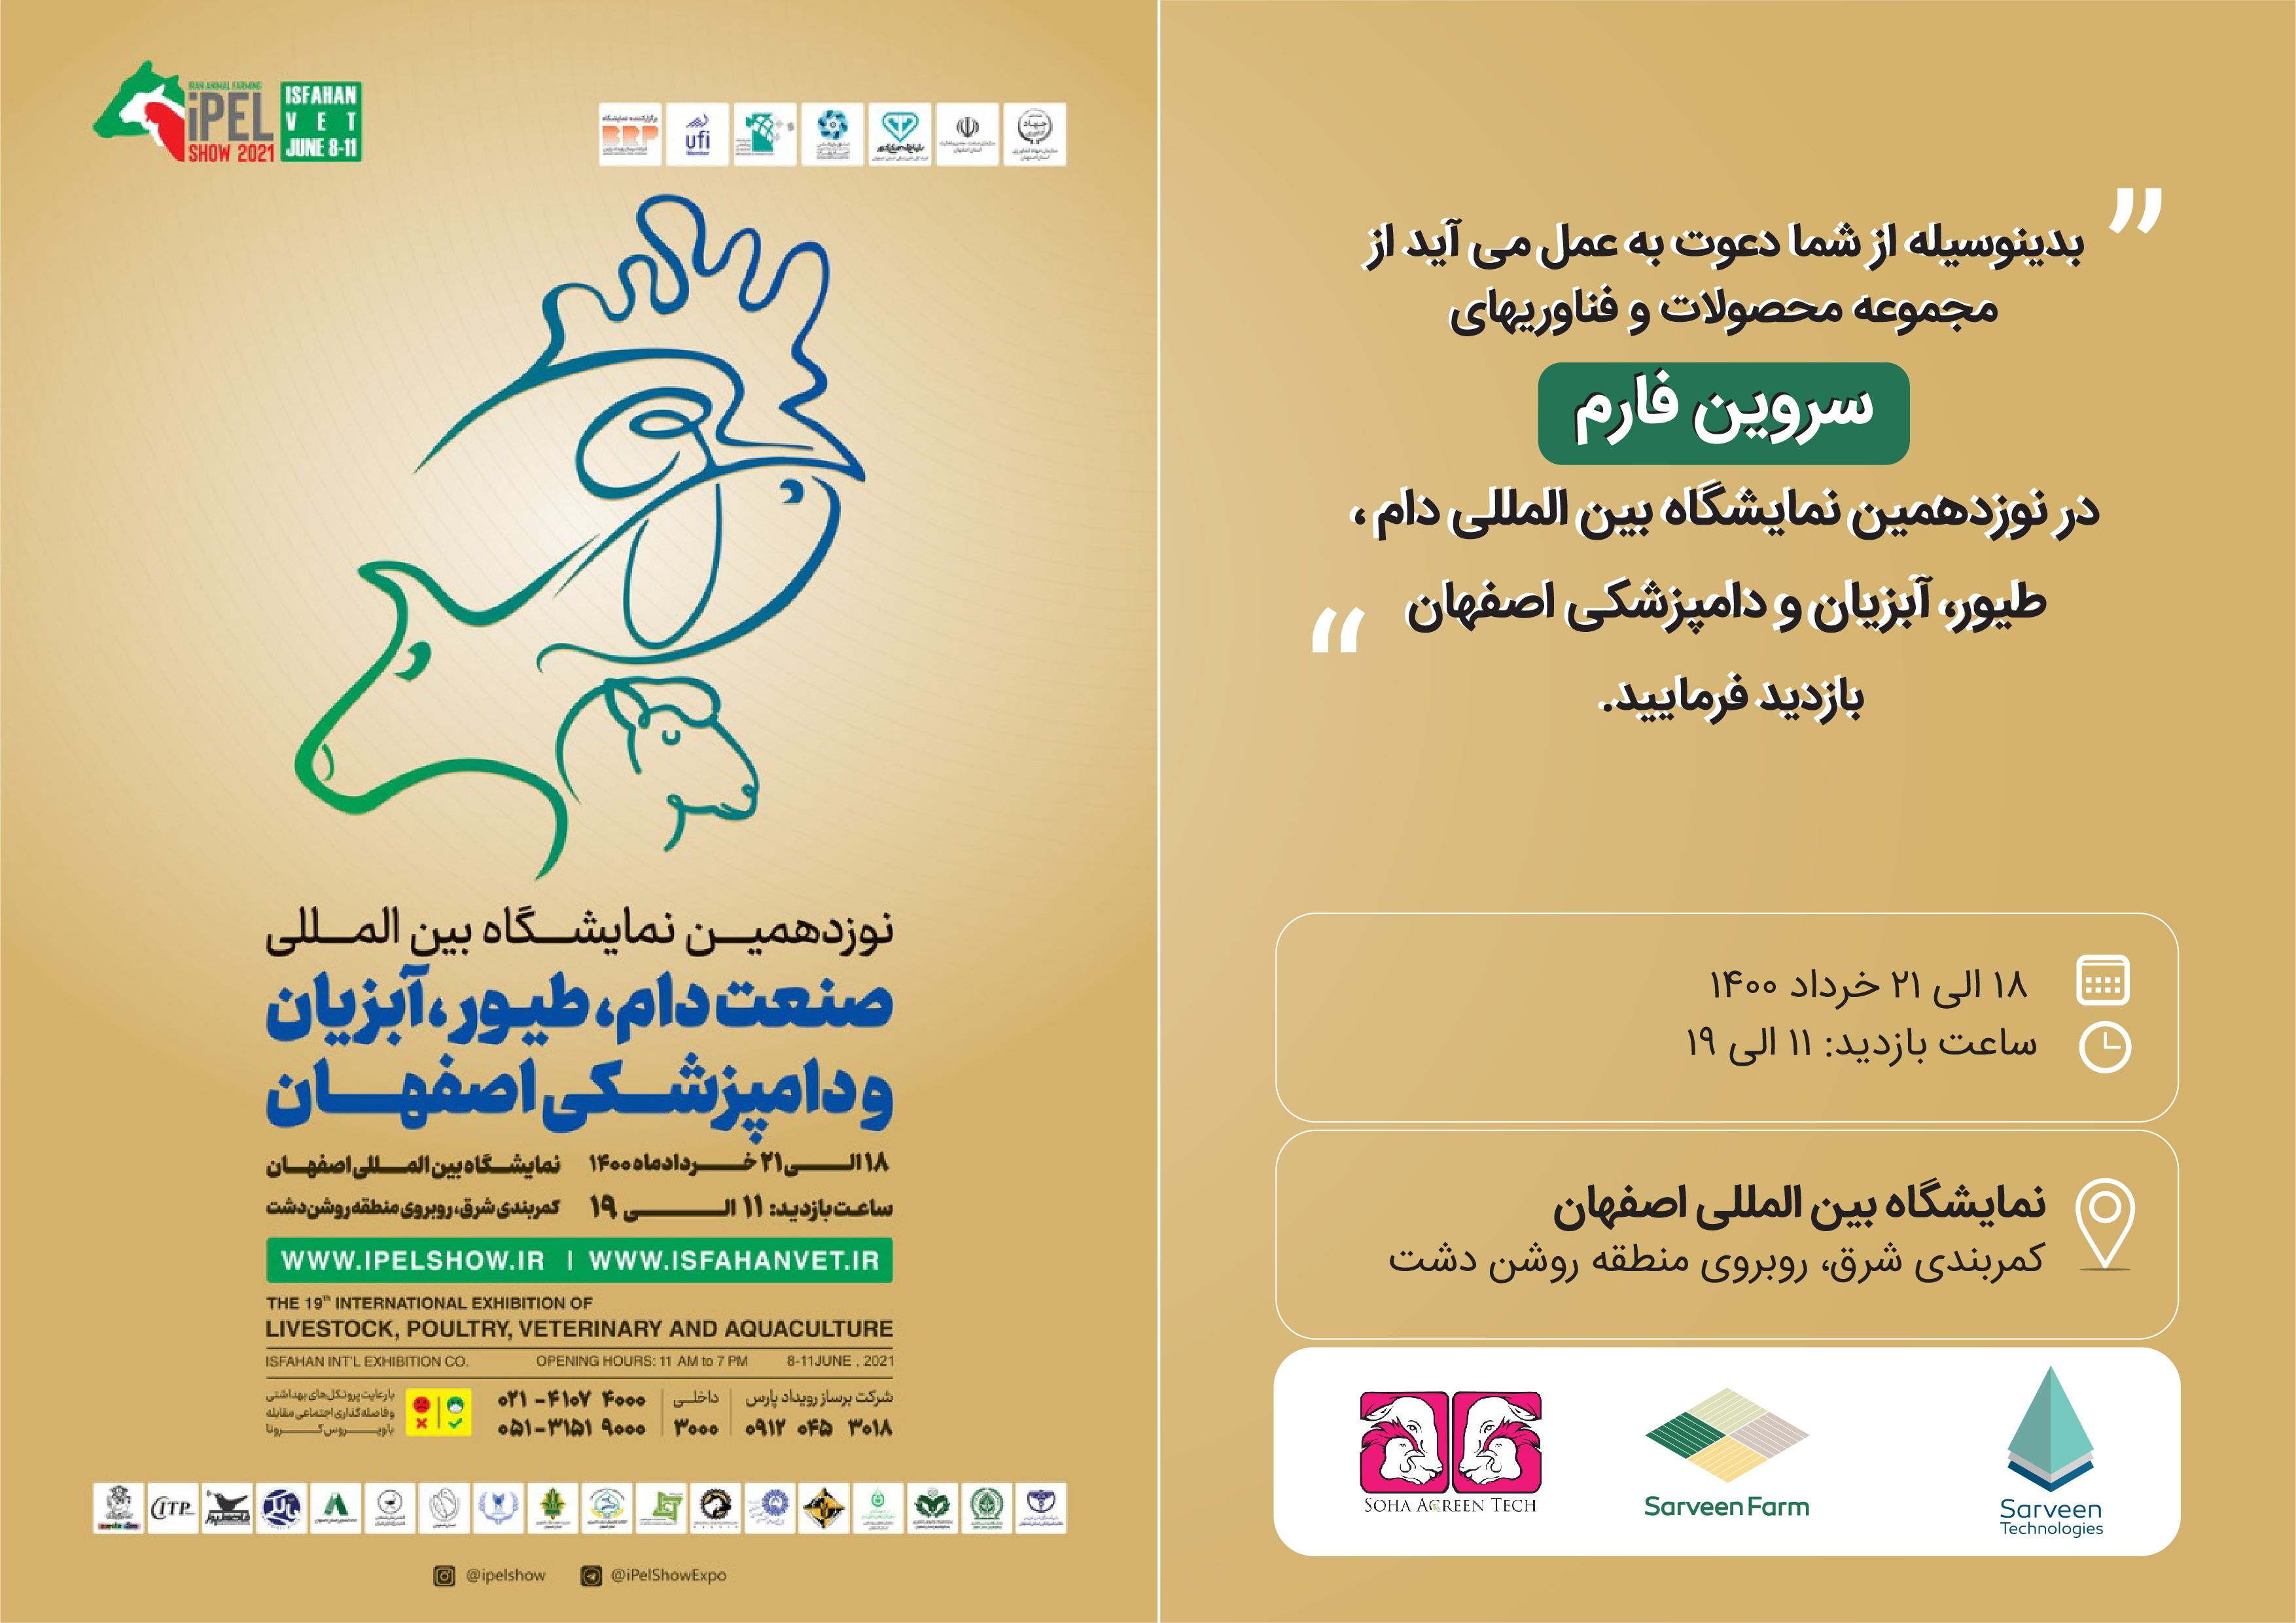 نوزدهمین نمایشگاه بین المللی دام، طیور، آبزیان و دامپزشکی اصفهان